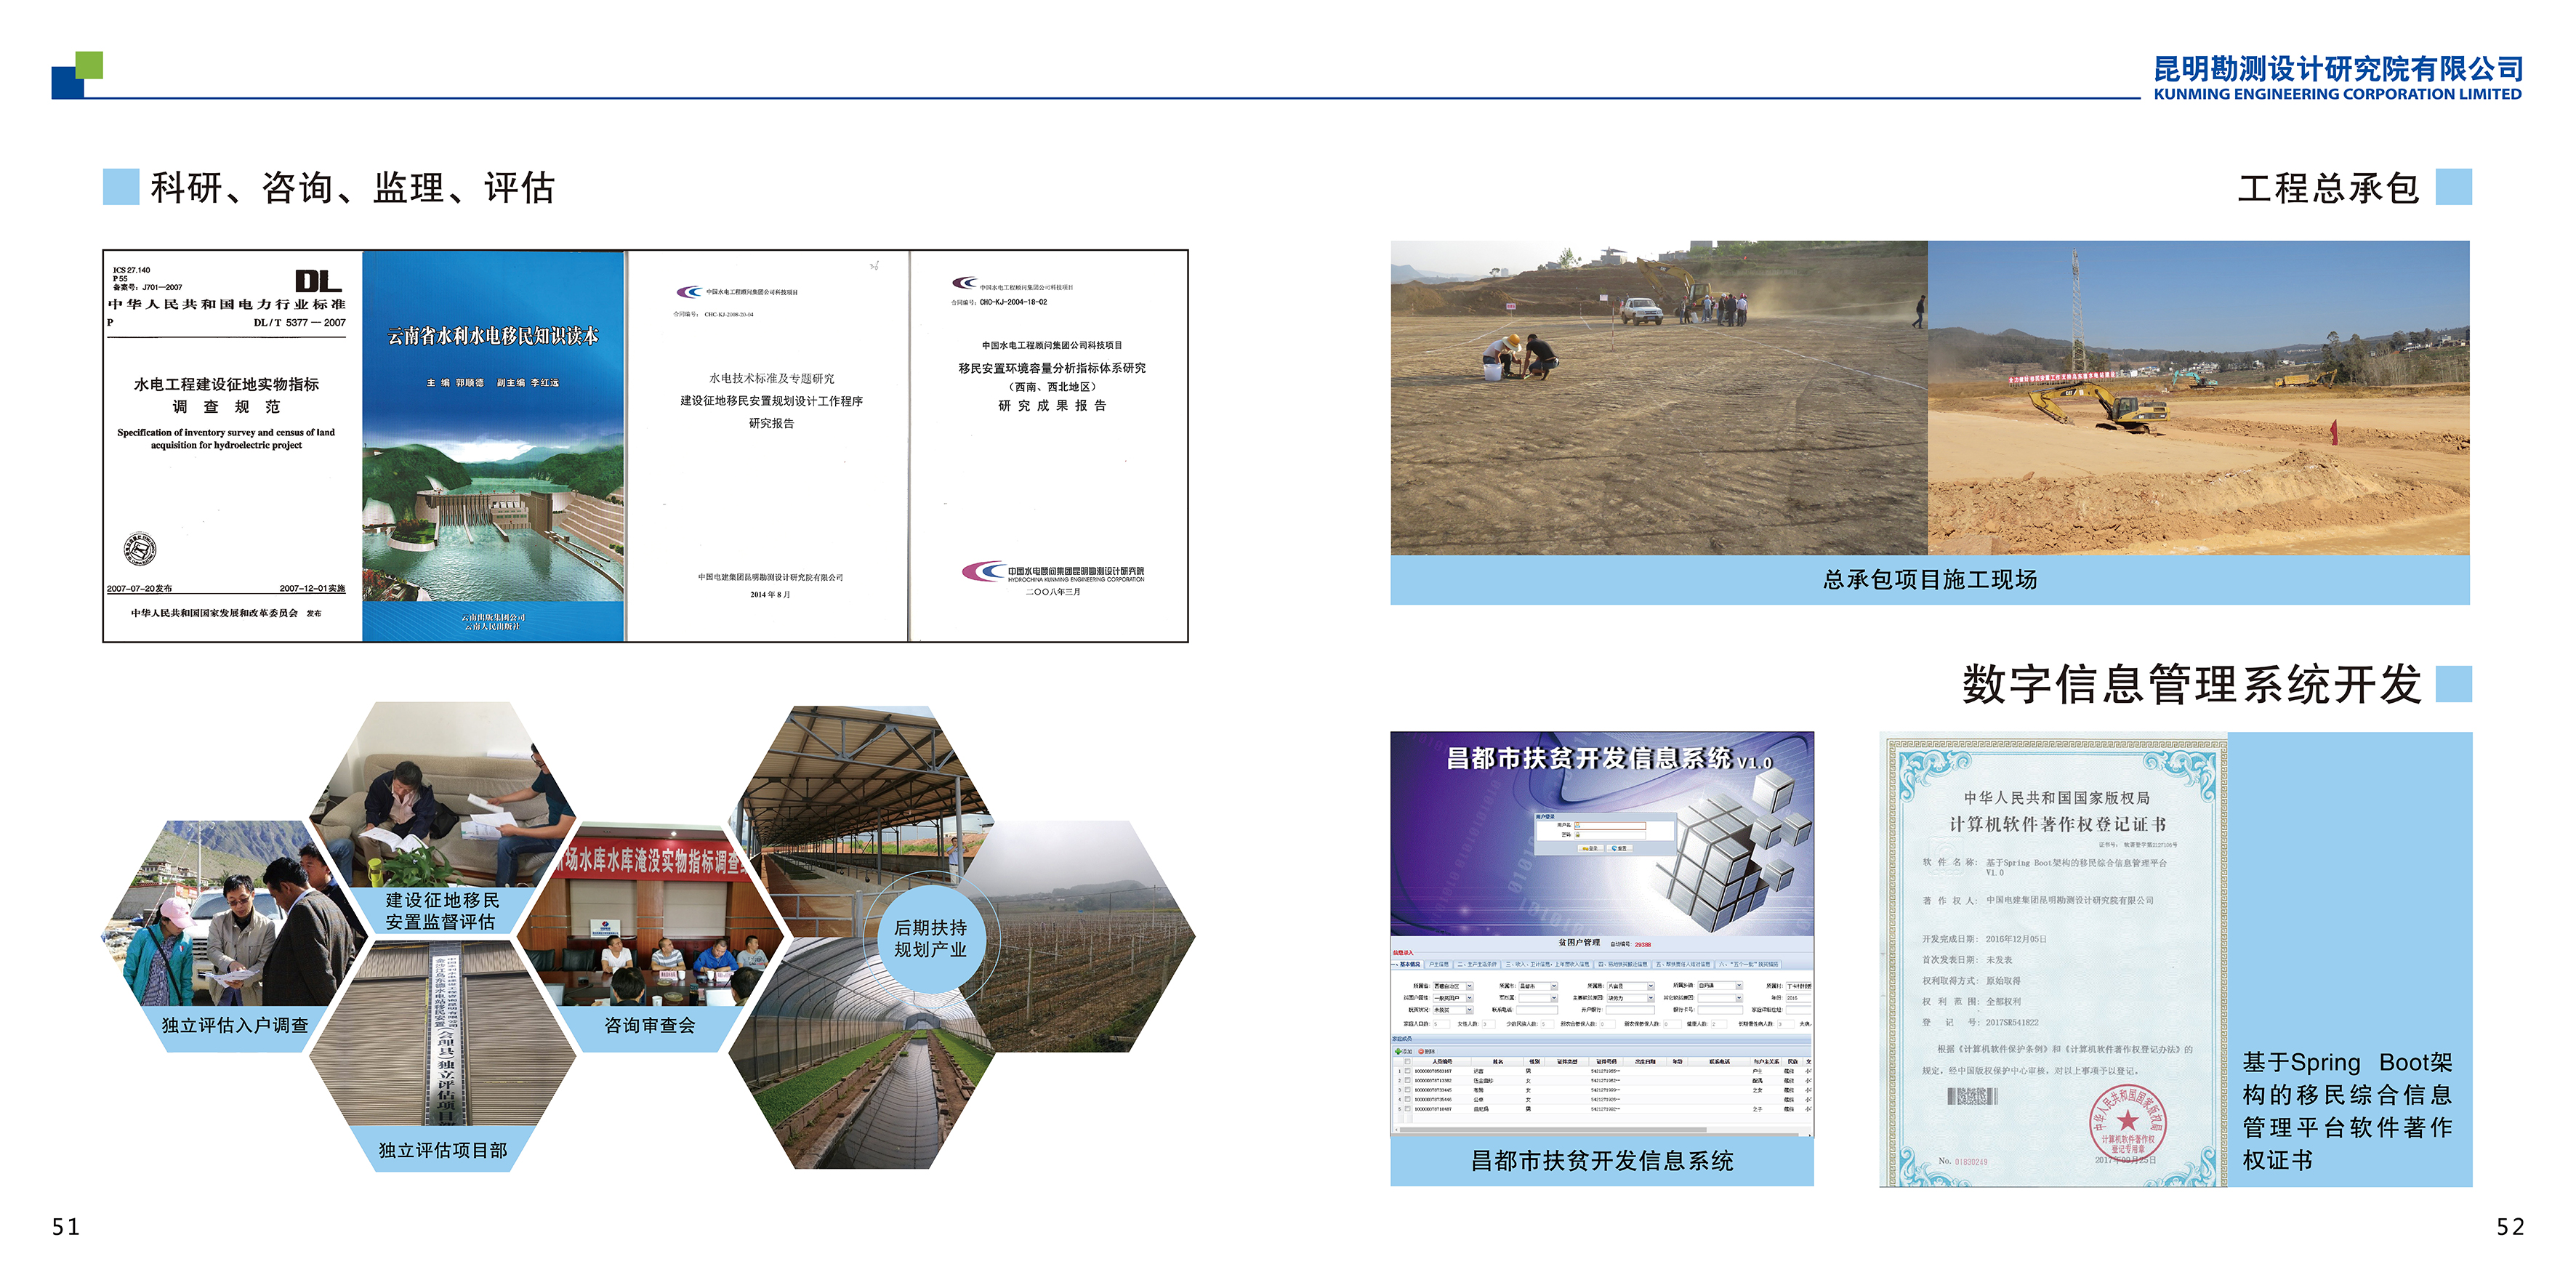 三、中国电建集团昆明勘测设计研究院宣传画册_29.png